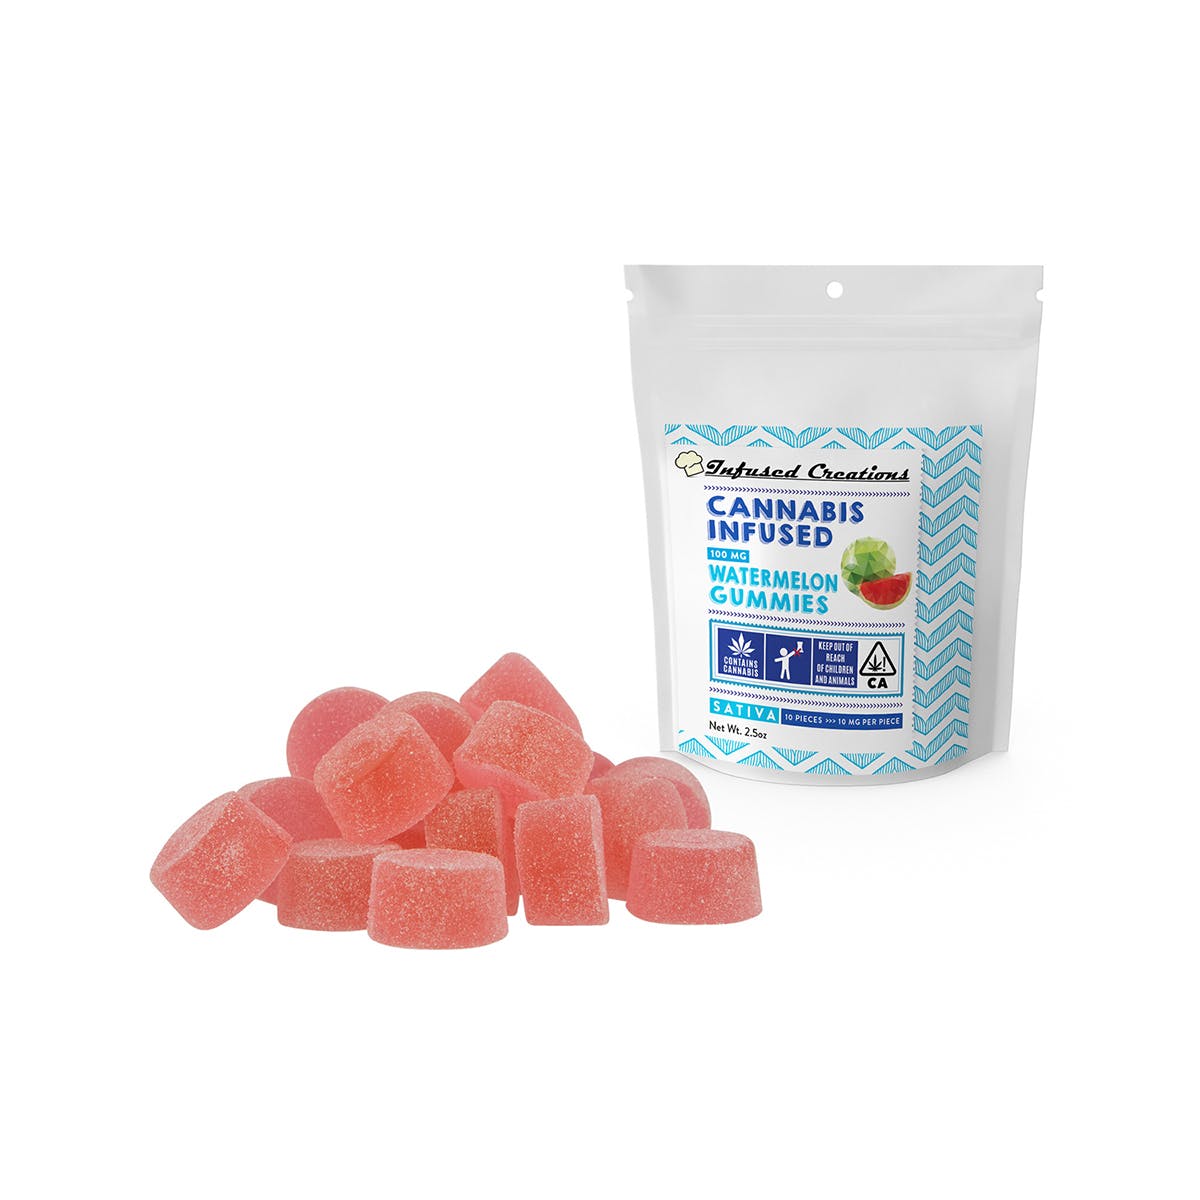 Watermelon Gummies Sativa 100mg